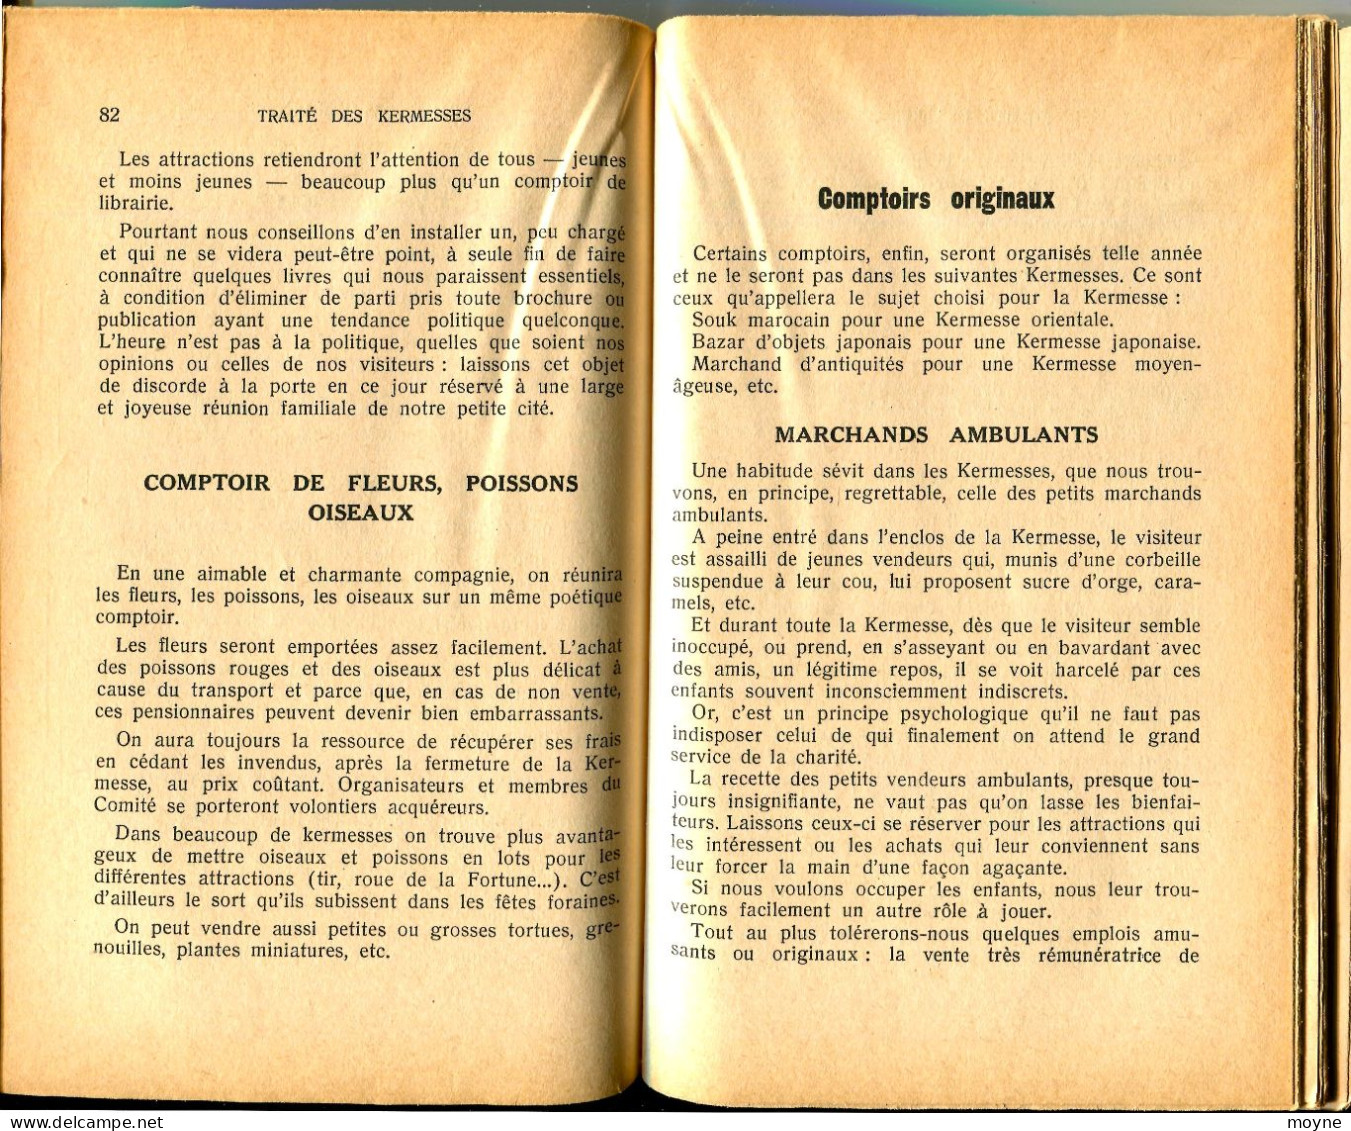 TOULEMONDE Anna - Traité Des Kermesses. Billaudot Paris 1957 In-12 ( 190 X 120 Mm ) De 224 Pages Broché. - Palour Games